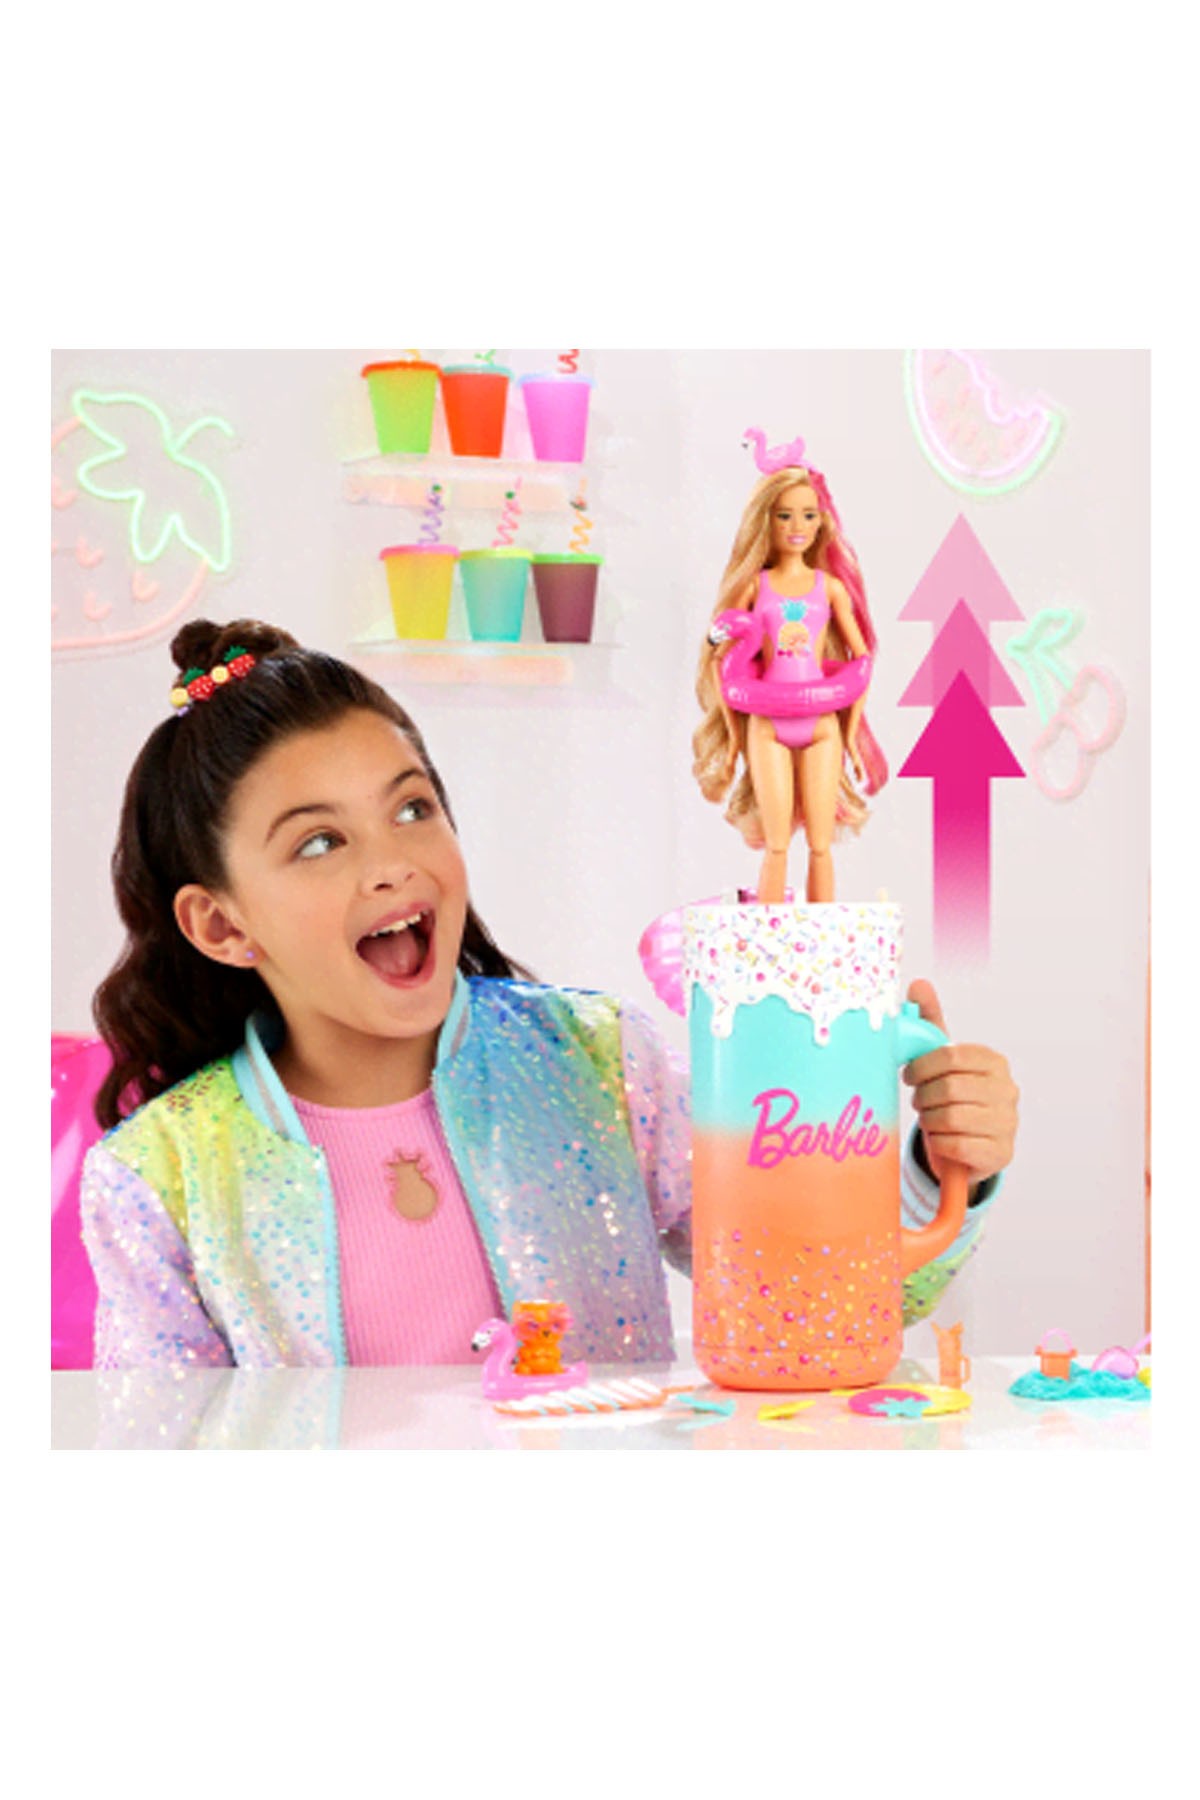 Barbie Pop Reveal Sürprizli Bardak Oyun Seti HRK57